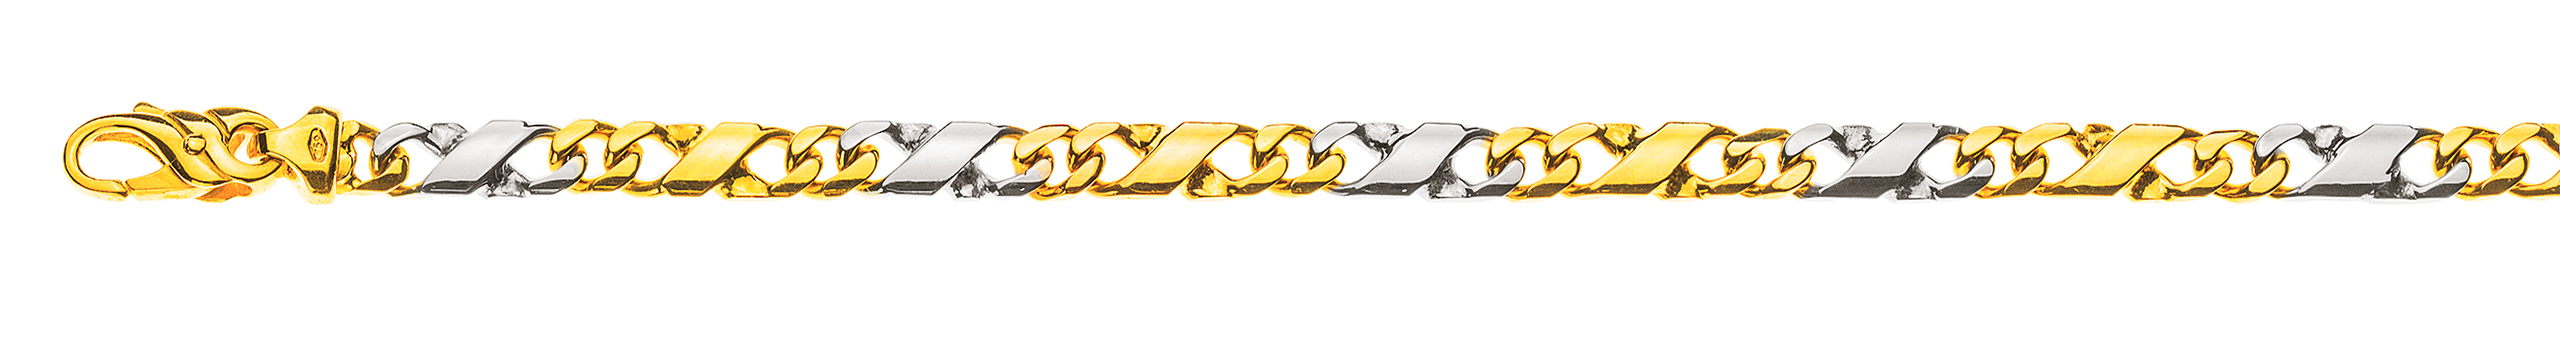 AURONOS Prestige Armband Carrera 18K Gelb-/Weissgold 22cm 5mm